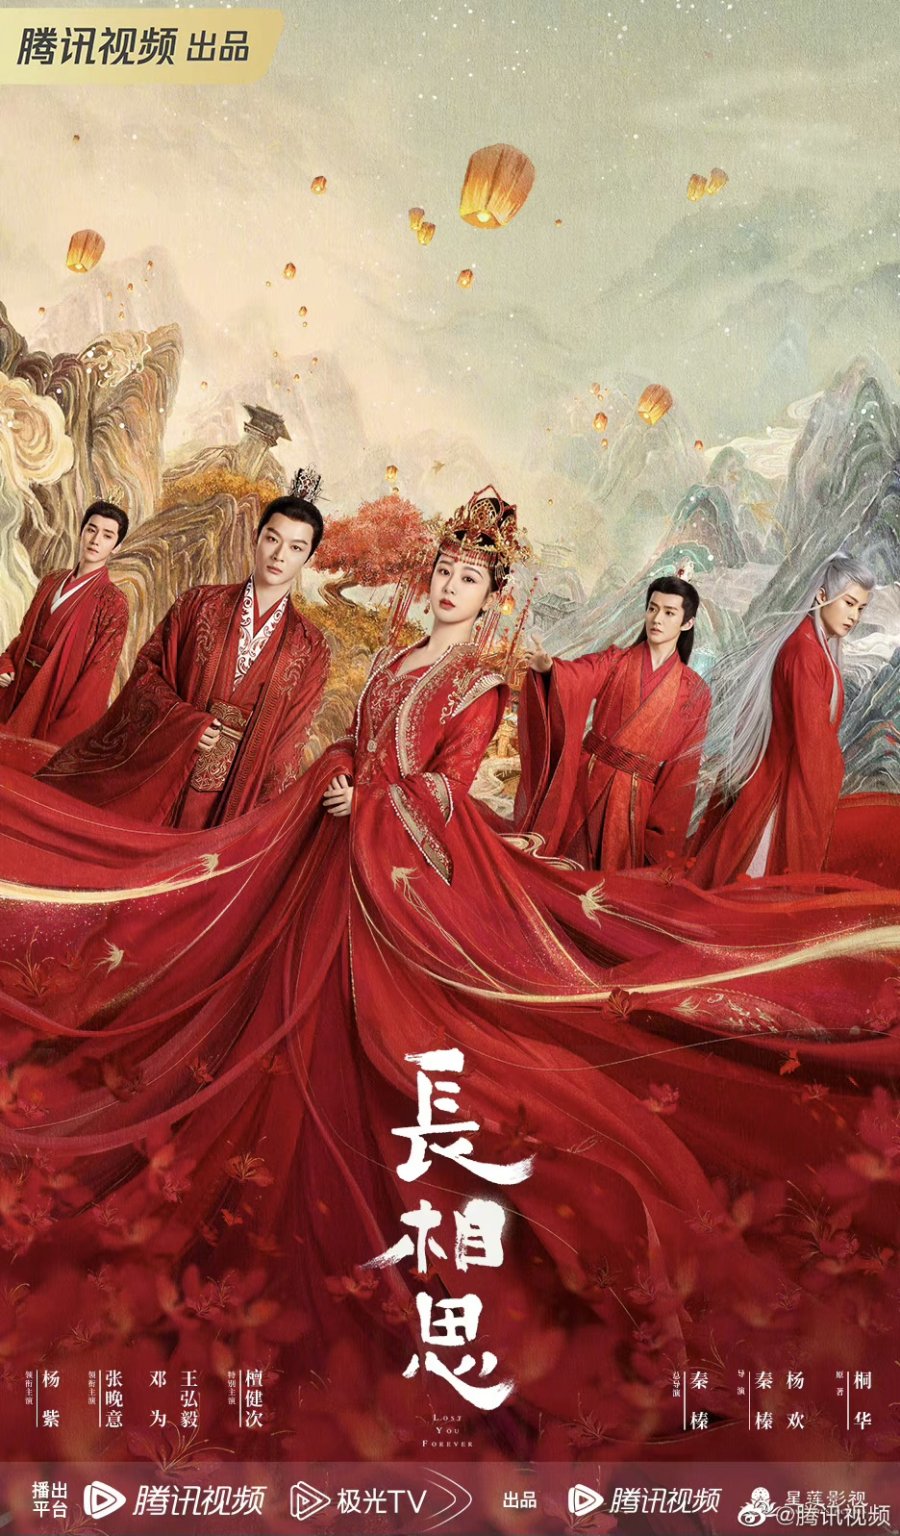 Perfect World: Ye Fan's descendants appear, Huo Ling'er is amazing